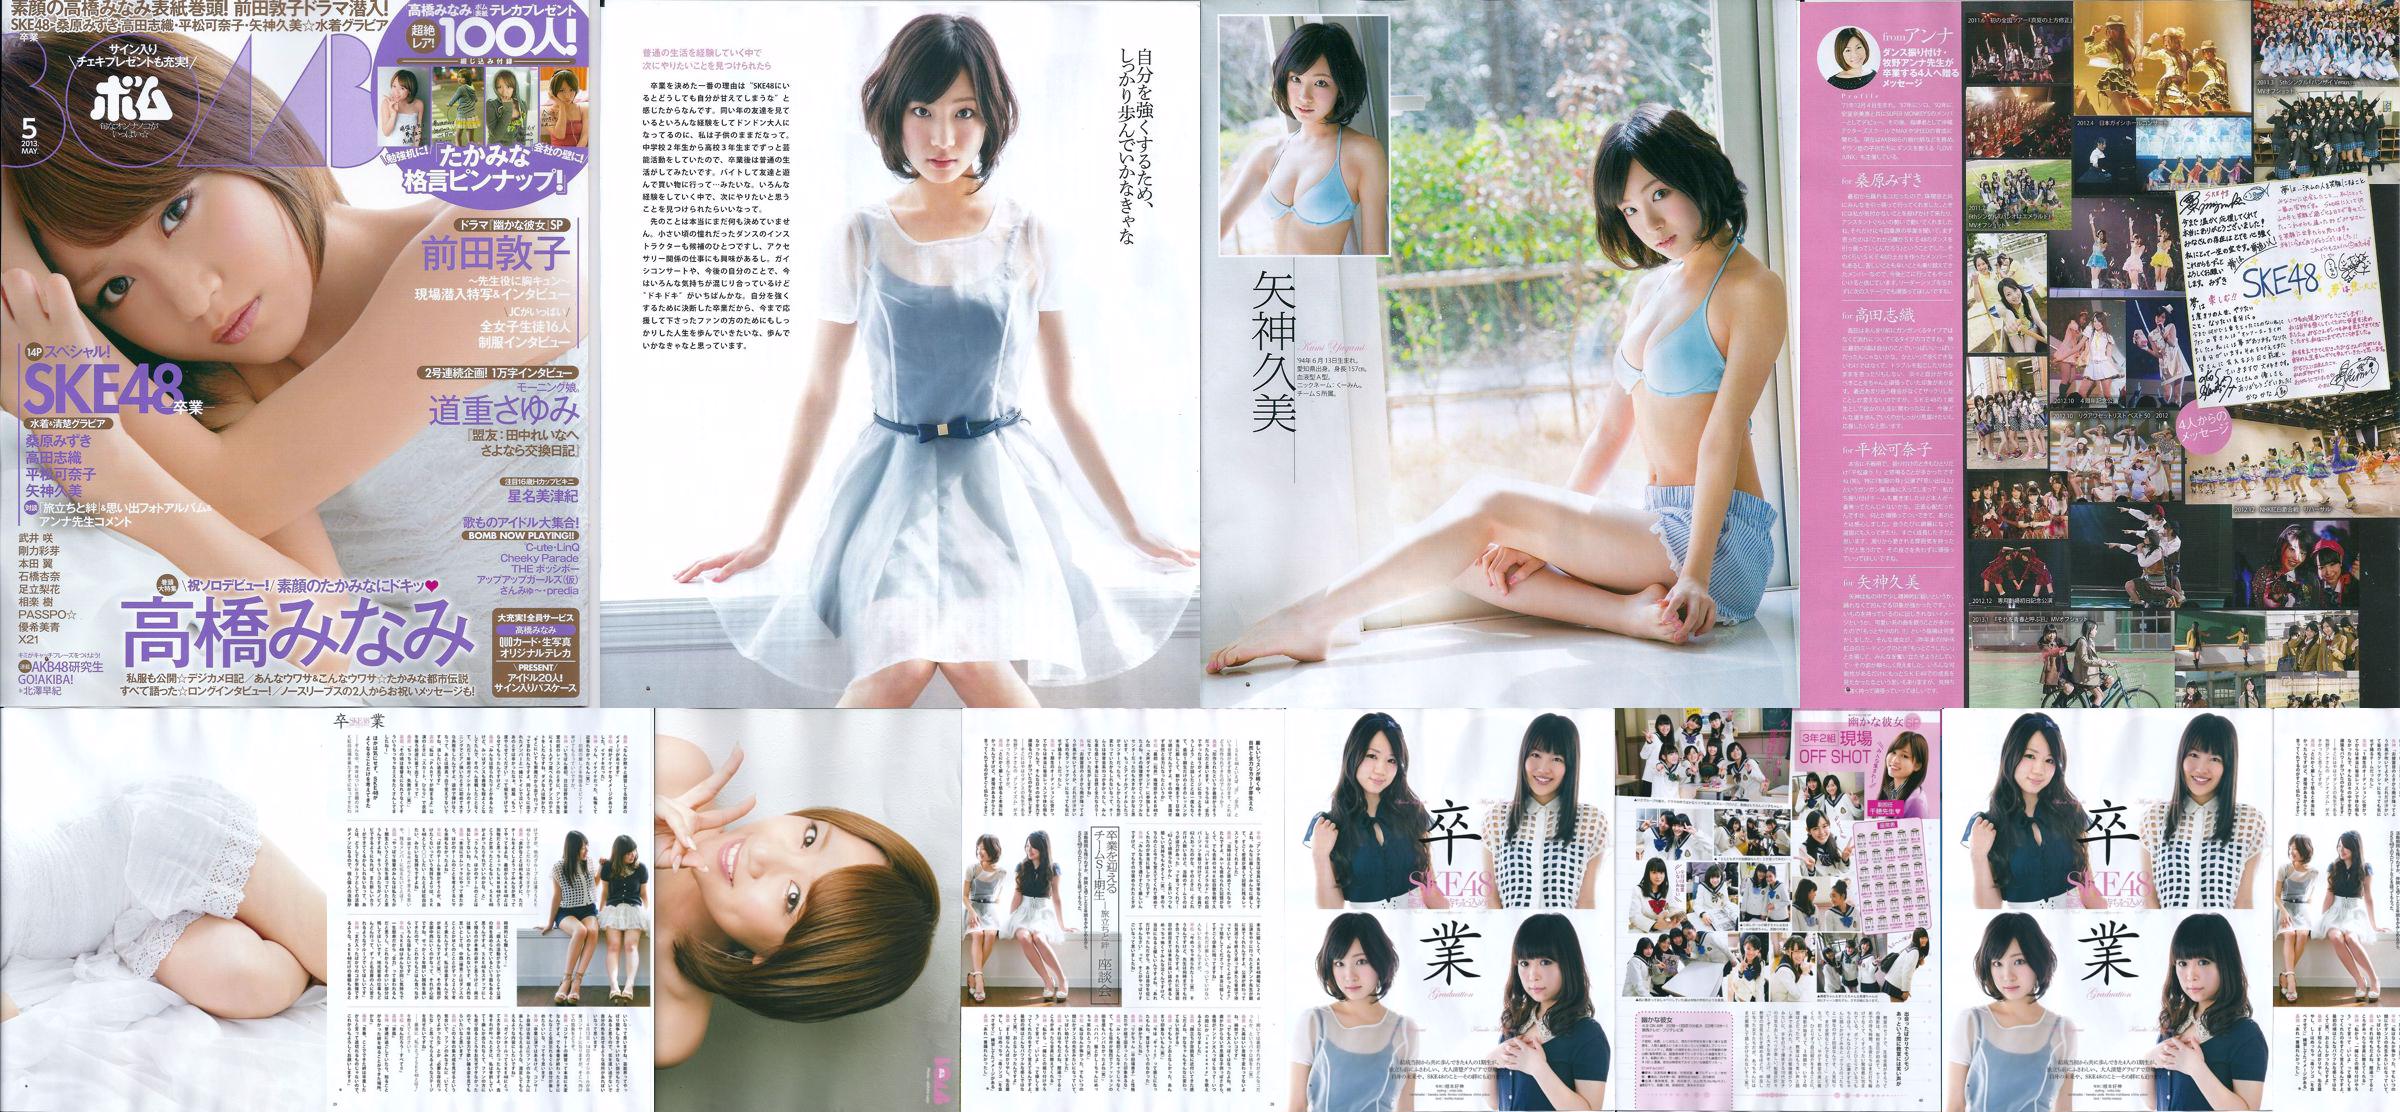 [Bomb Magazine] 2013年No.05 矢神久美 高橋みなみ 前田敦子 写真杂志 No.8c52c3 ページ18